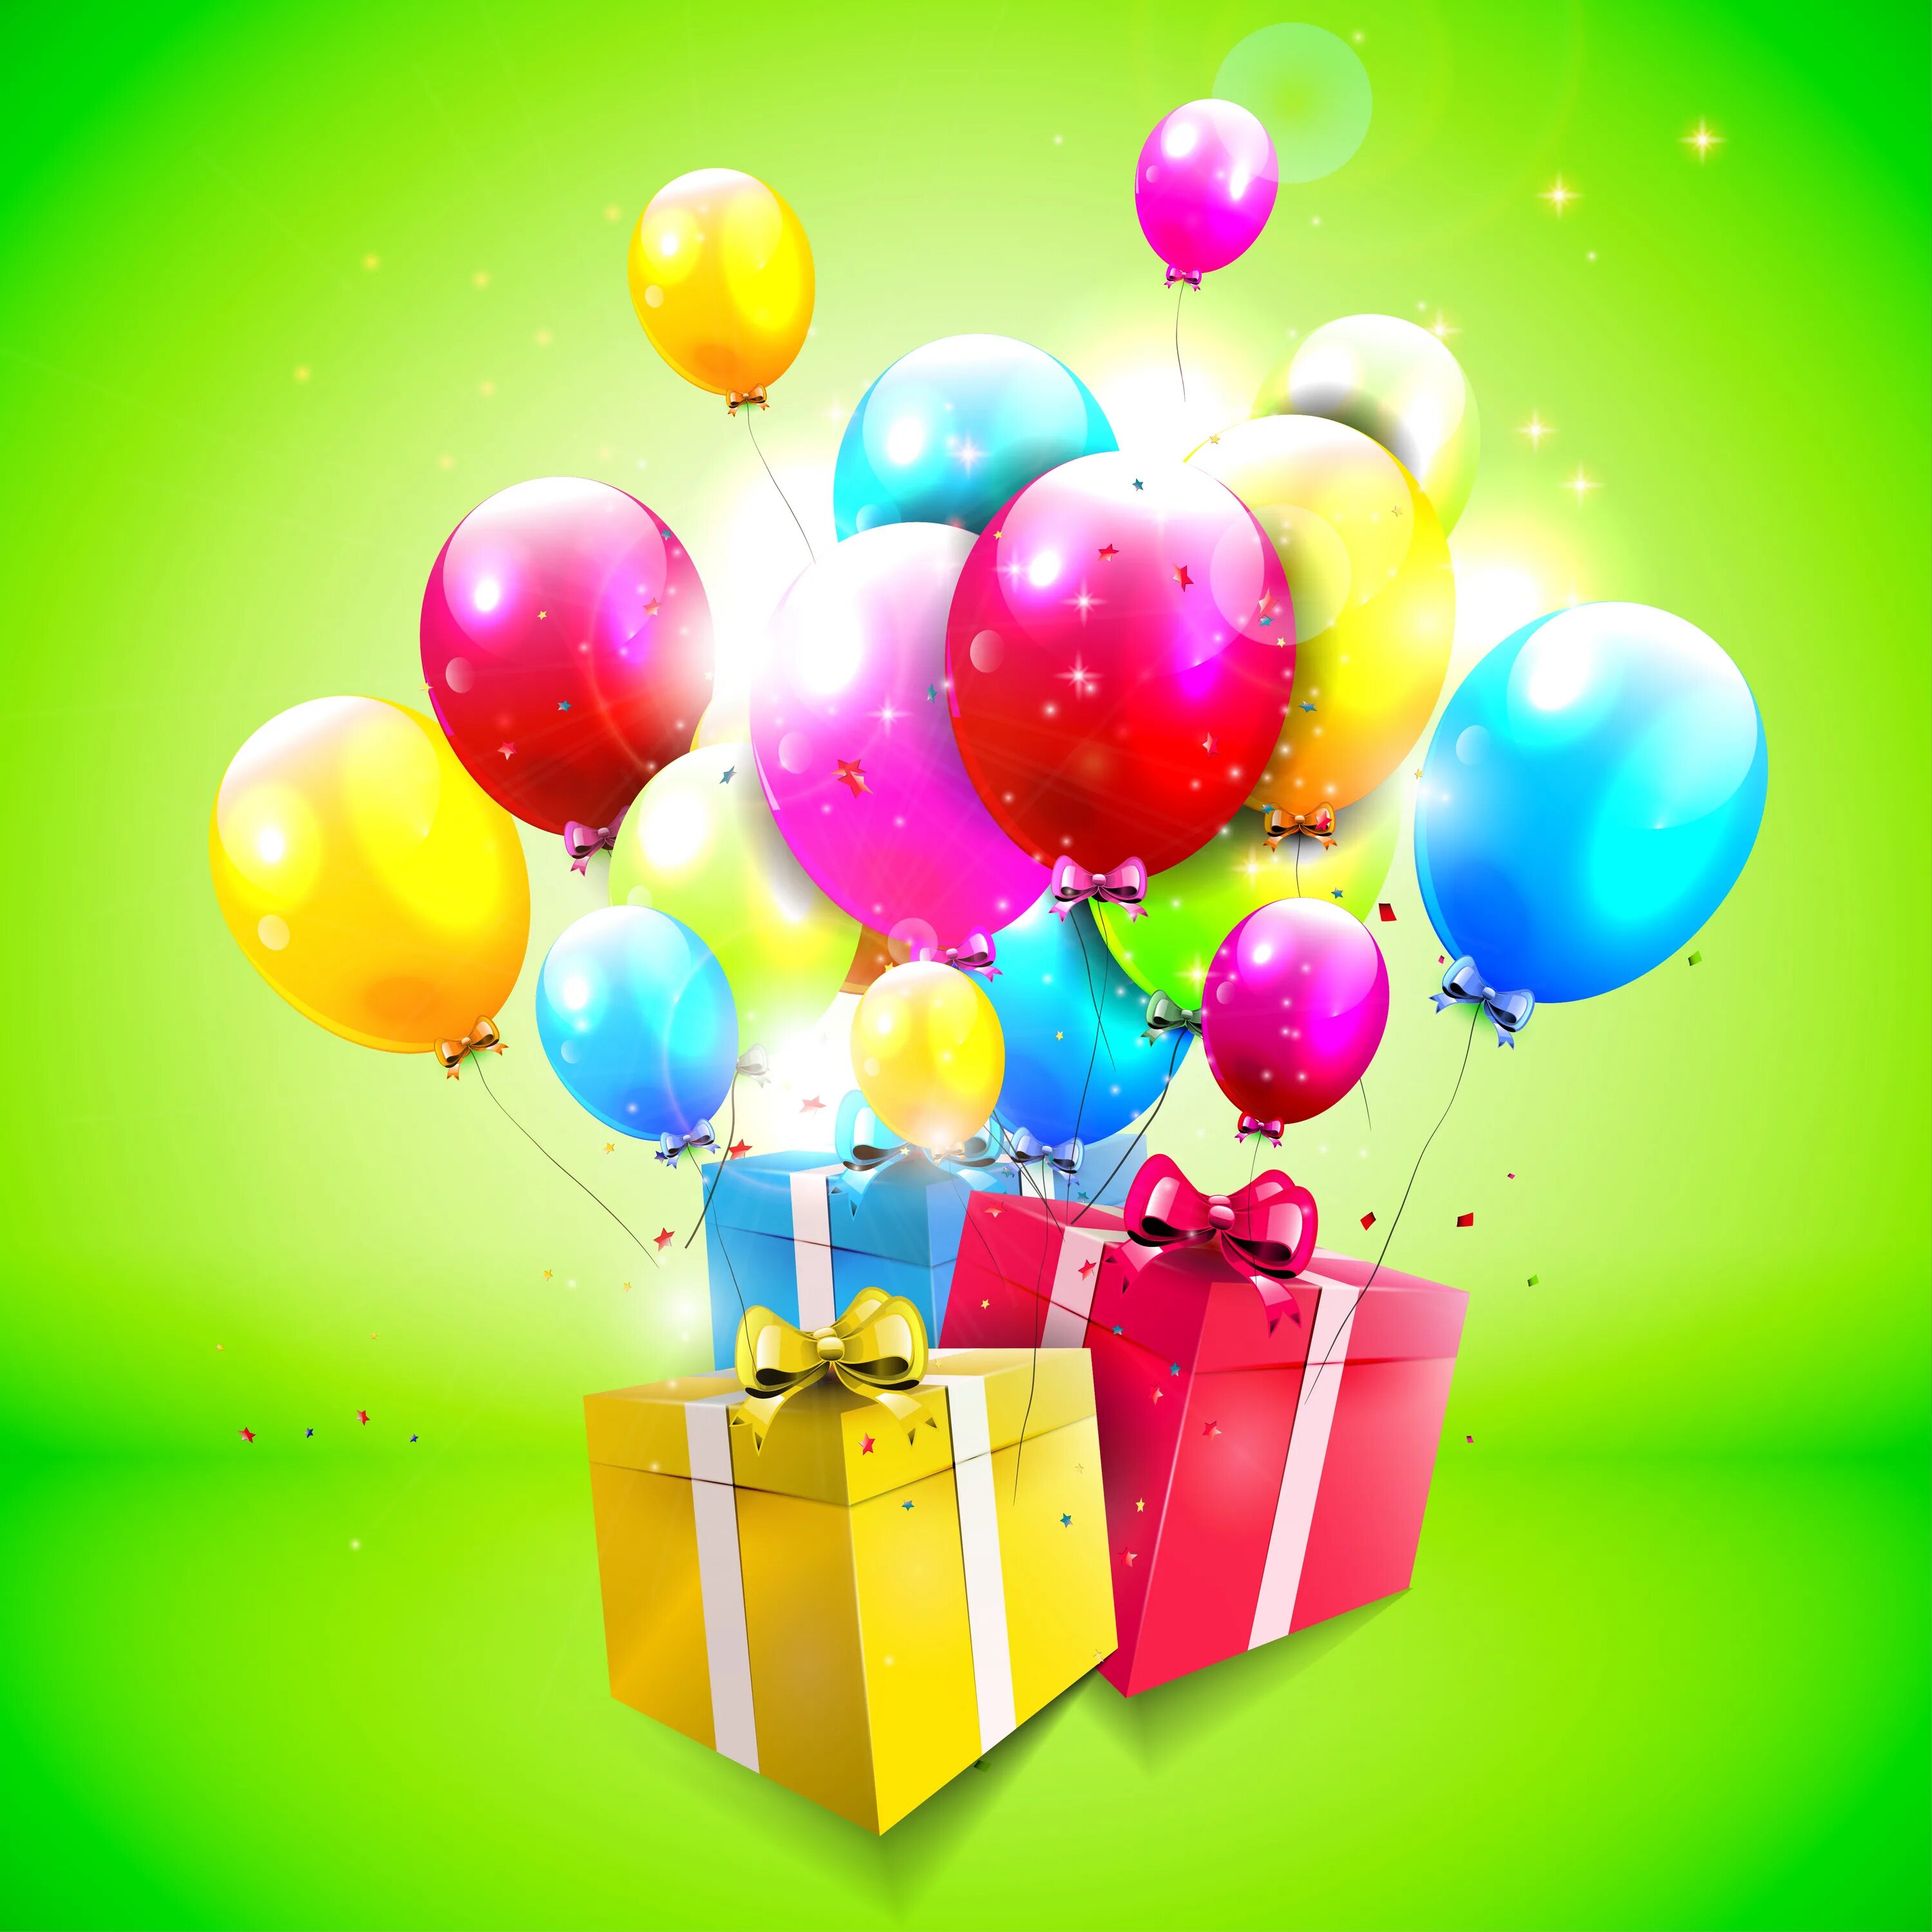 Шары с днем рождения. Гарик с днем рождения. Открытки с днём рождения с шариками. С днём рождения шарики воздушные. С днем рождения емко